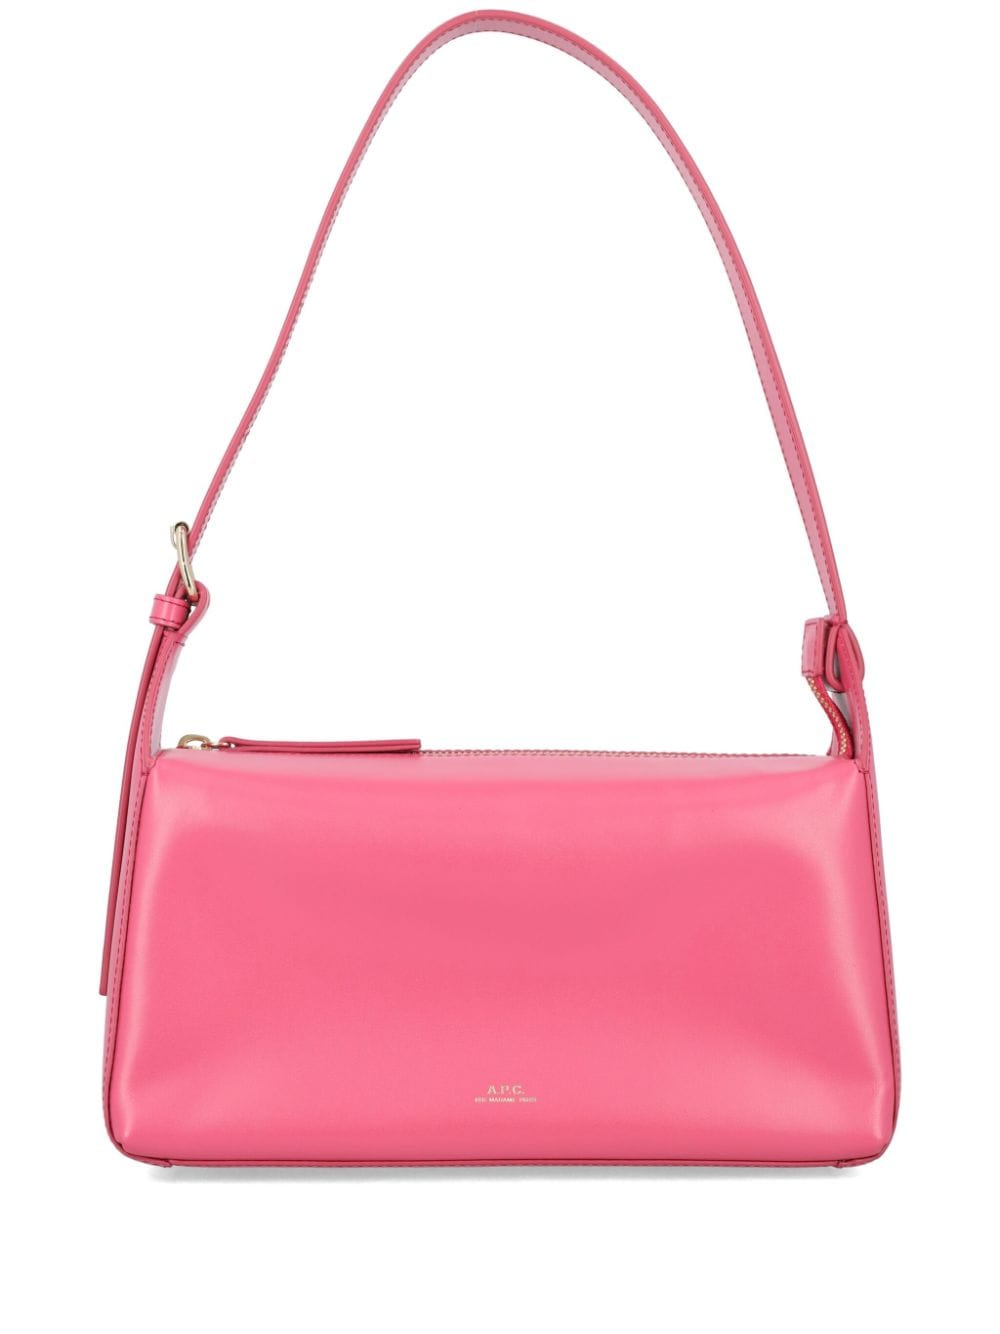 Apc Virginie Leather Shoulder Bag In Pink